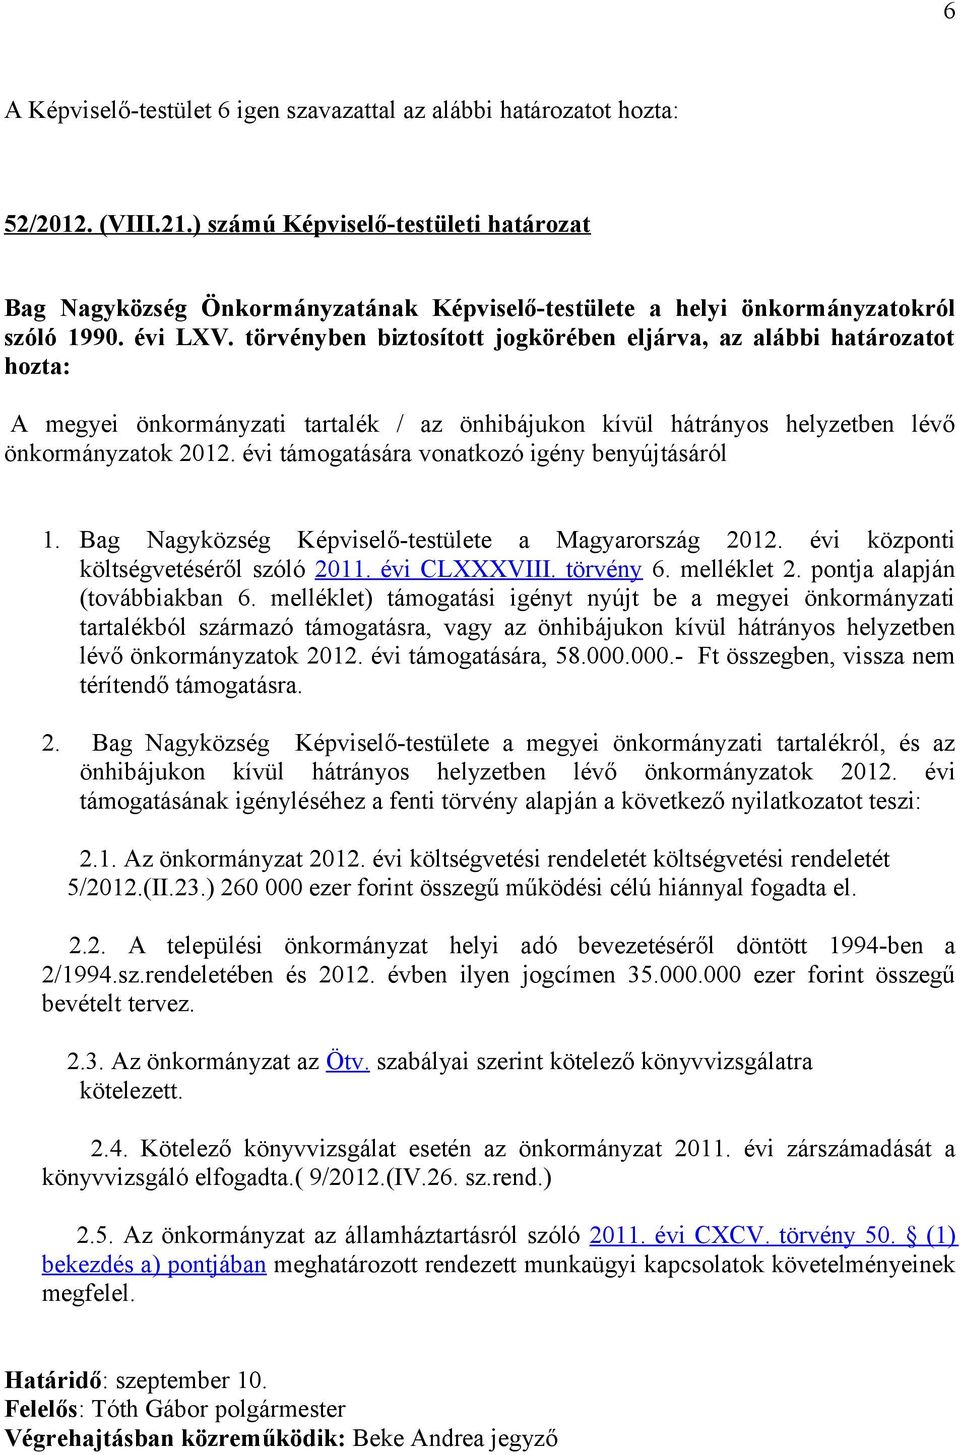 Bag Nagyközség Képviselő-testülete a Magyarország 2012. évi központi költségvetéséről szóló 2011. évi CLXXXVIII. törvény 6. melléklet 2. pontja alapján (továbbiakban 6.